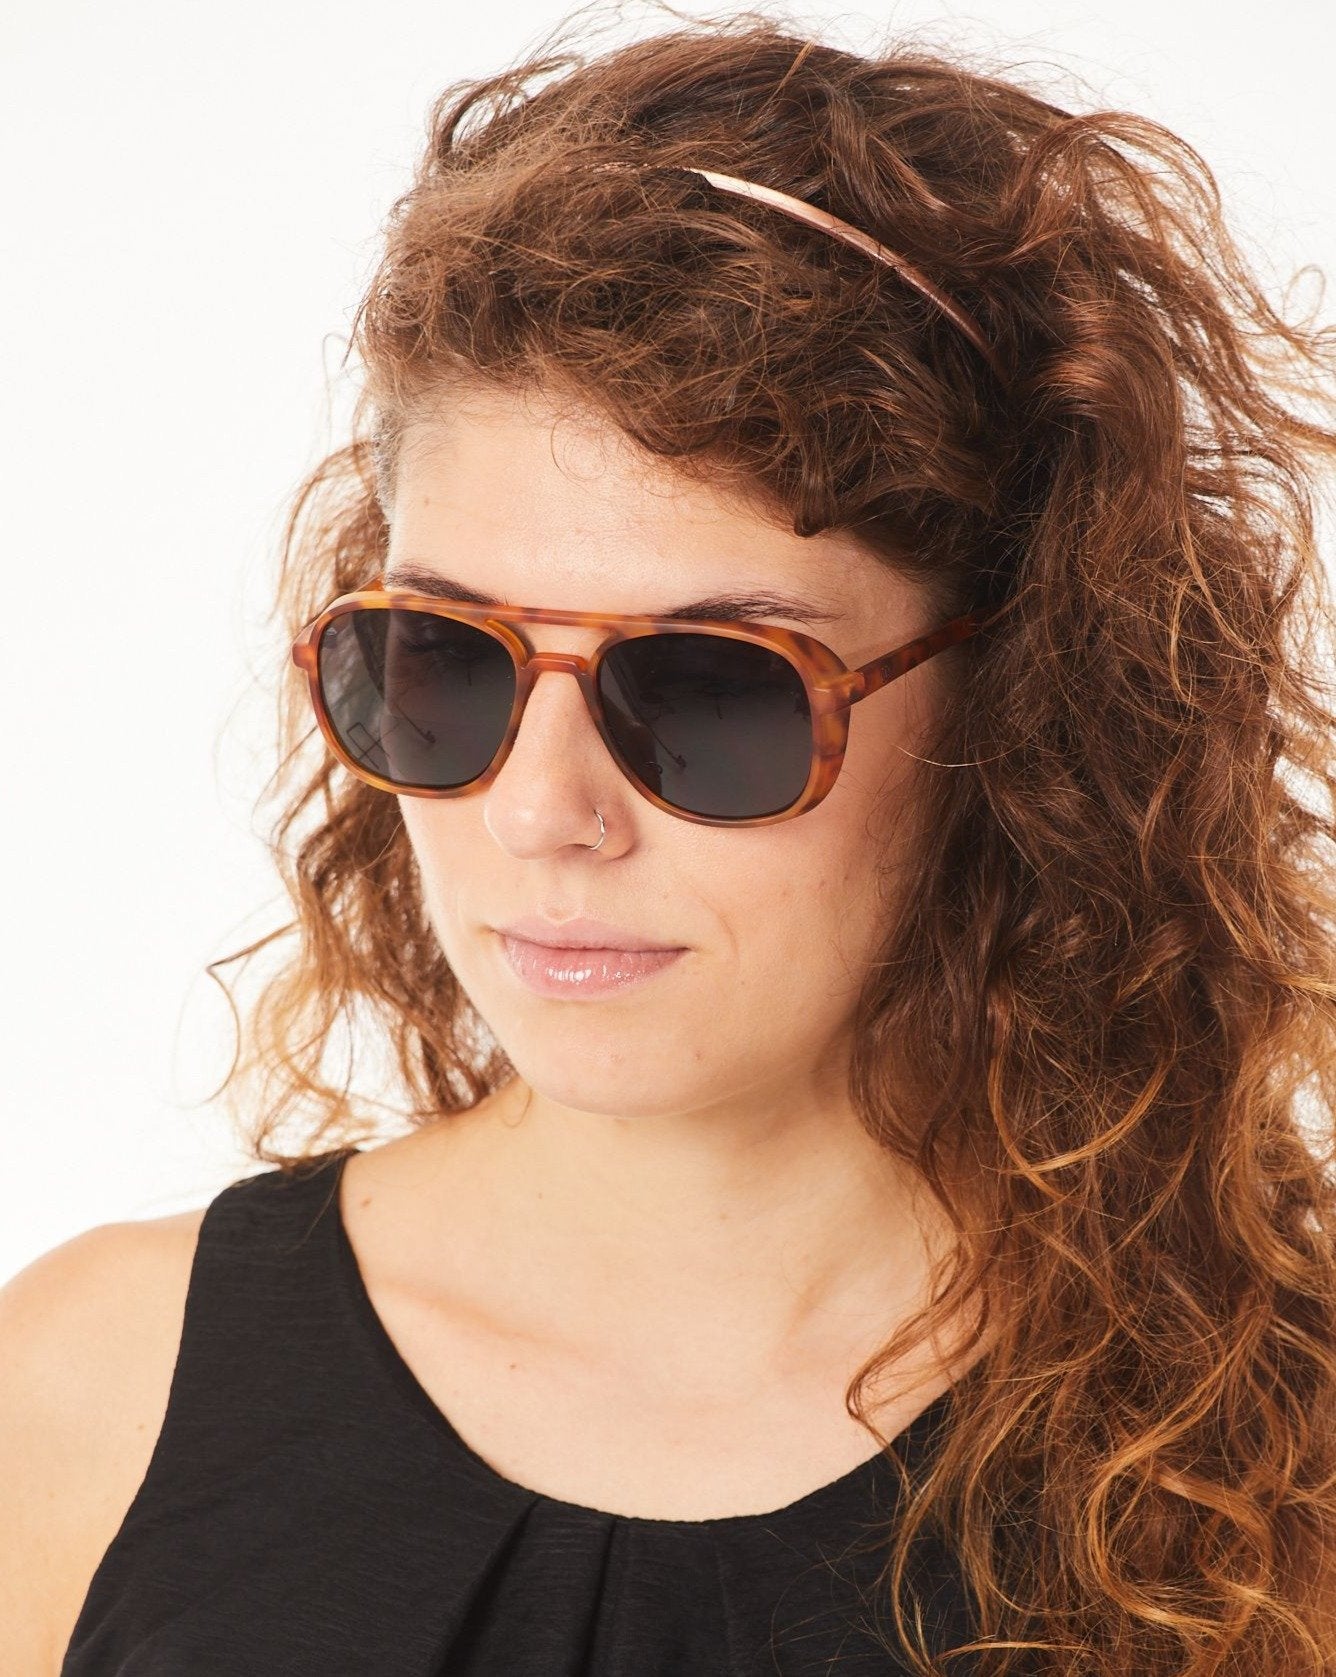 Aptica Polar Pilot Dorado Sunglasses Unisex Polarised Sun Lens Female Model